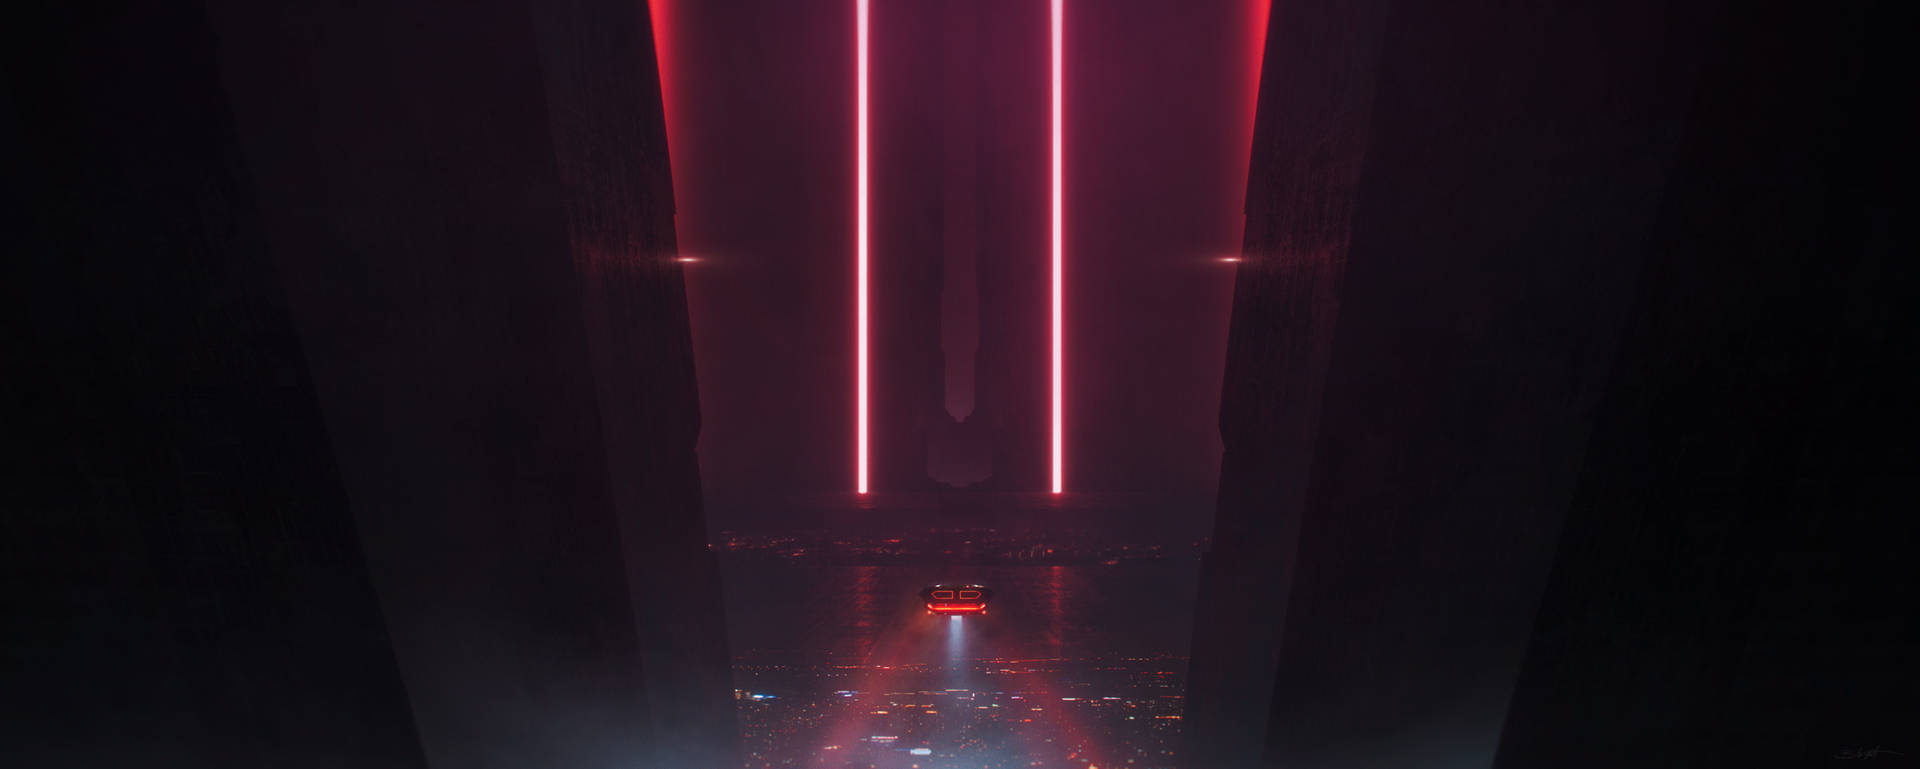 Red Lights Blade Runner 2049 4k